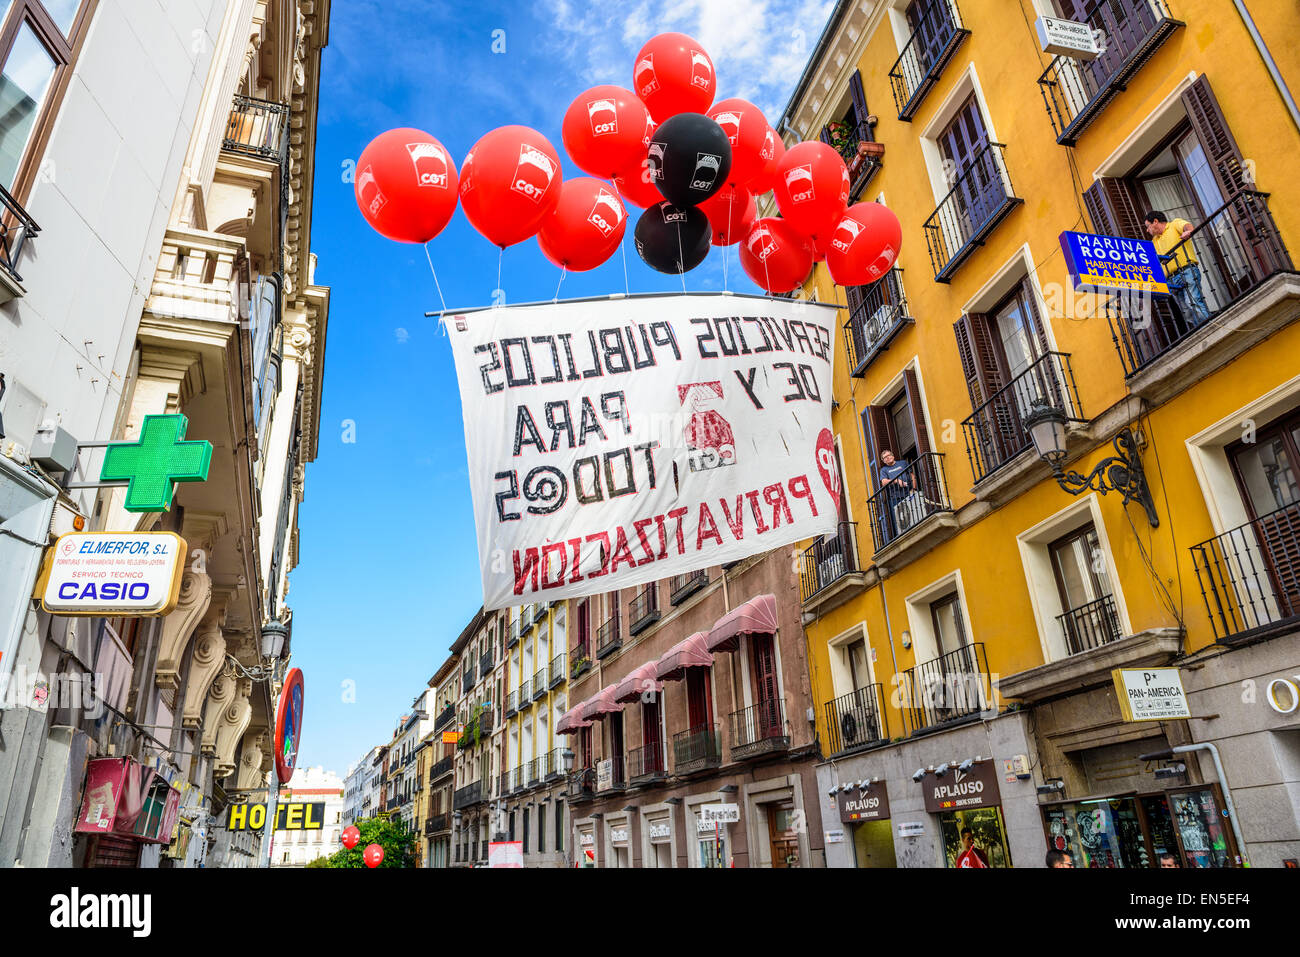 Une bannière réalisée par des ballons proteste contre la privatisation des entreprises exploitant de l'aéroport Aena Aeropuertos. Banque D'Images